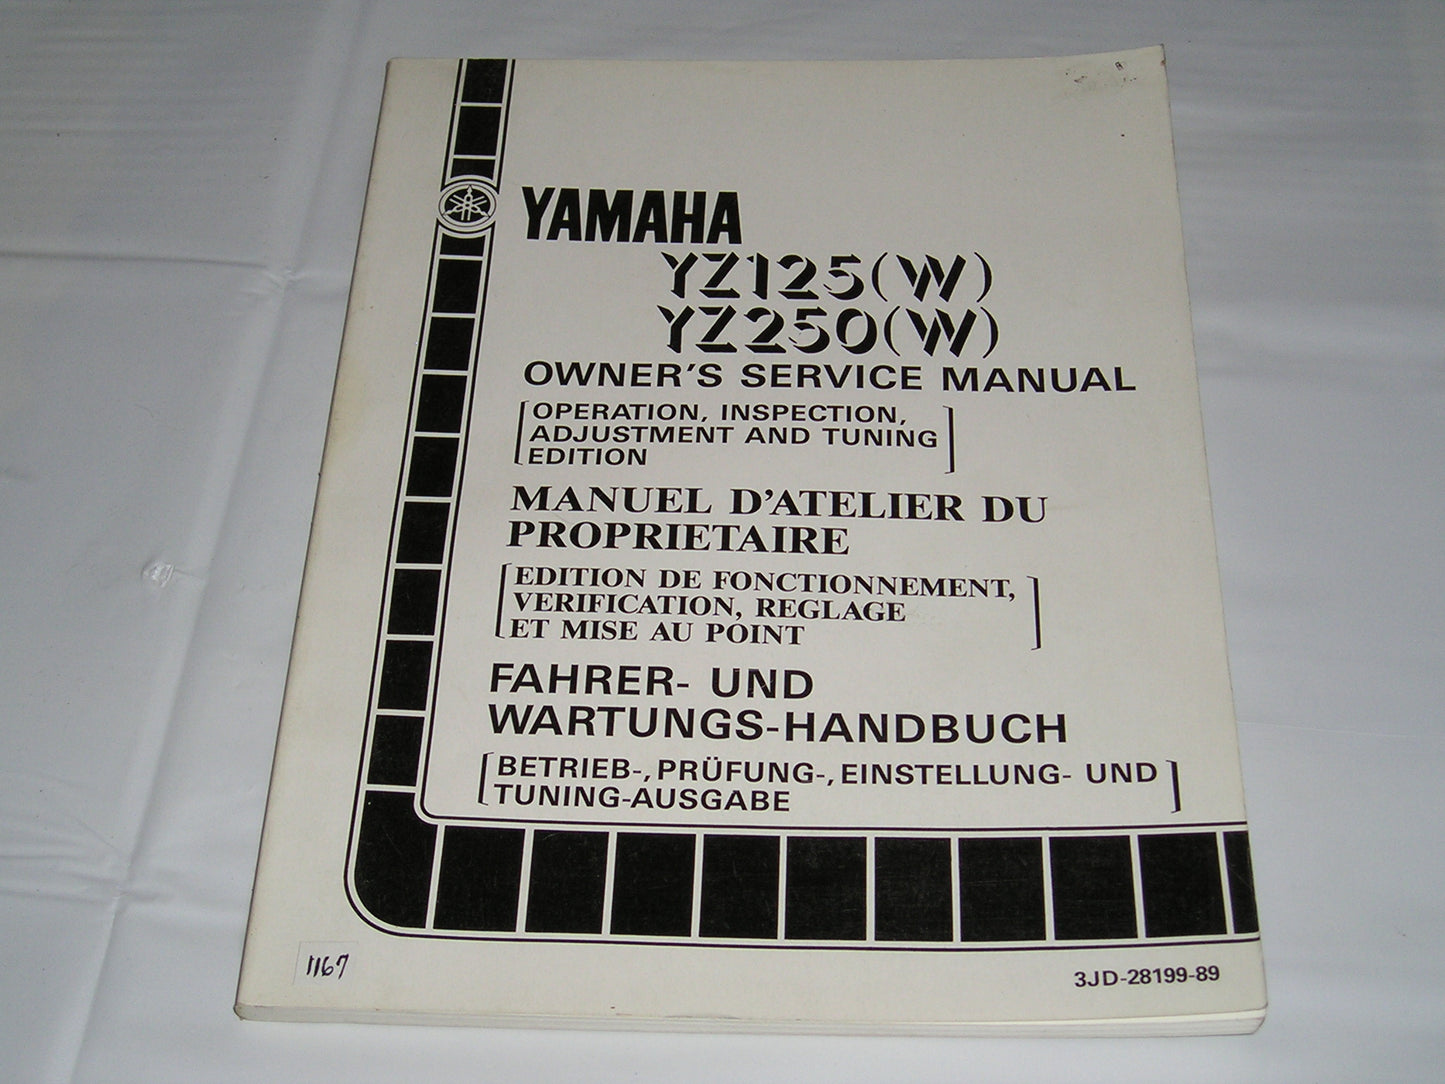 YAMAHA YZ125 W  YZ250 W  1989  Owner's Service Manual  3JD-28199-89  #1167